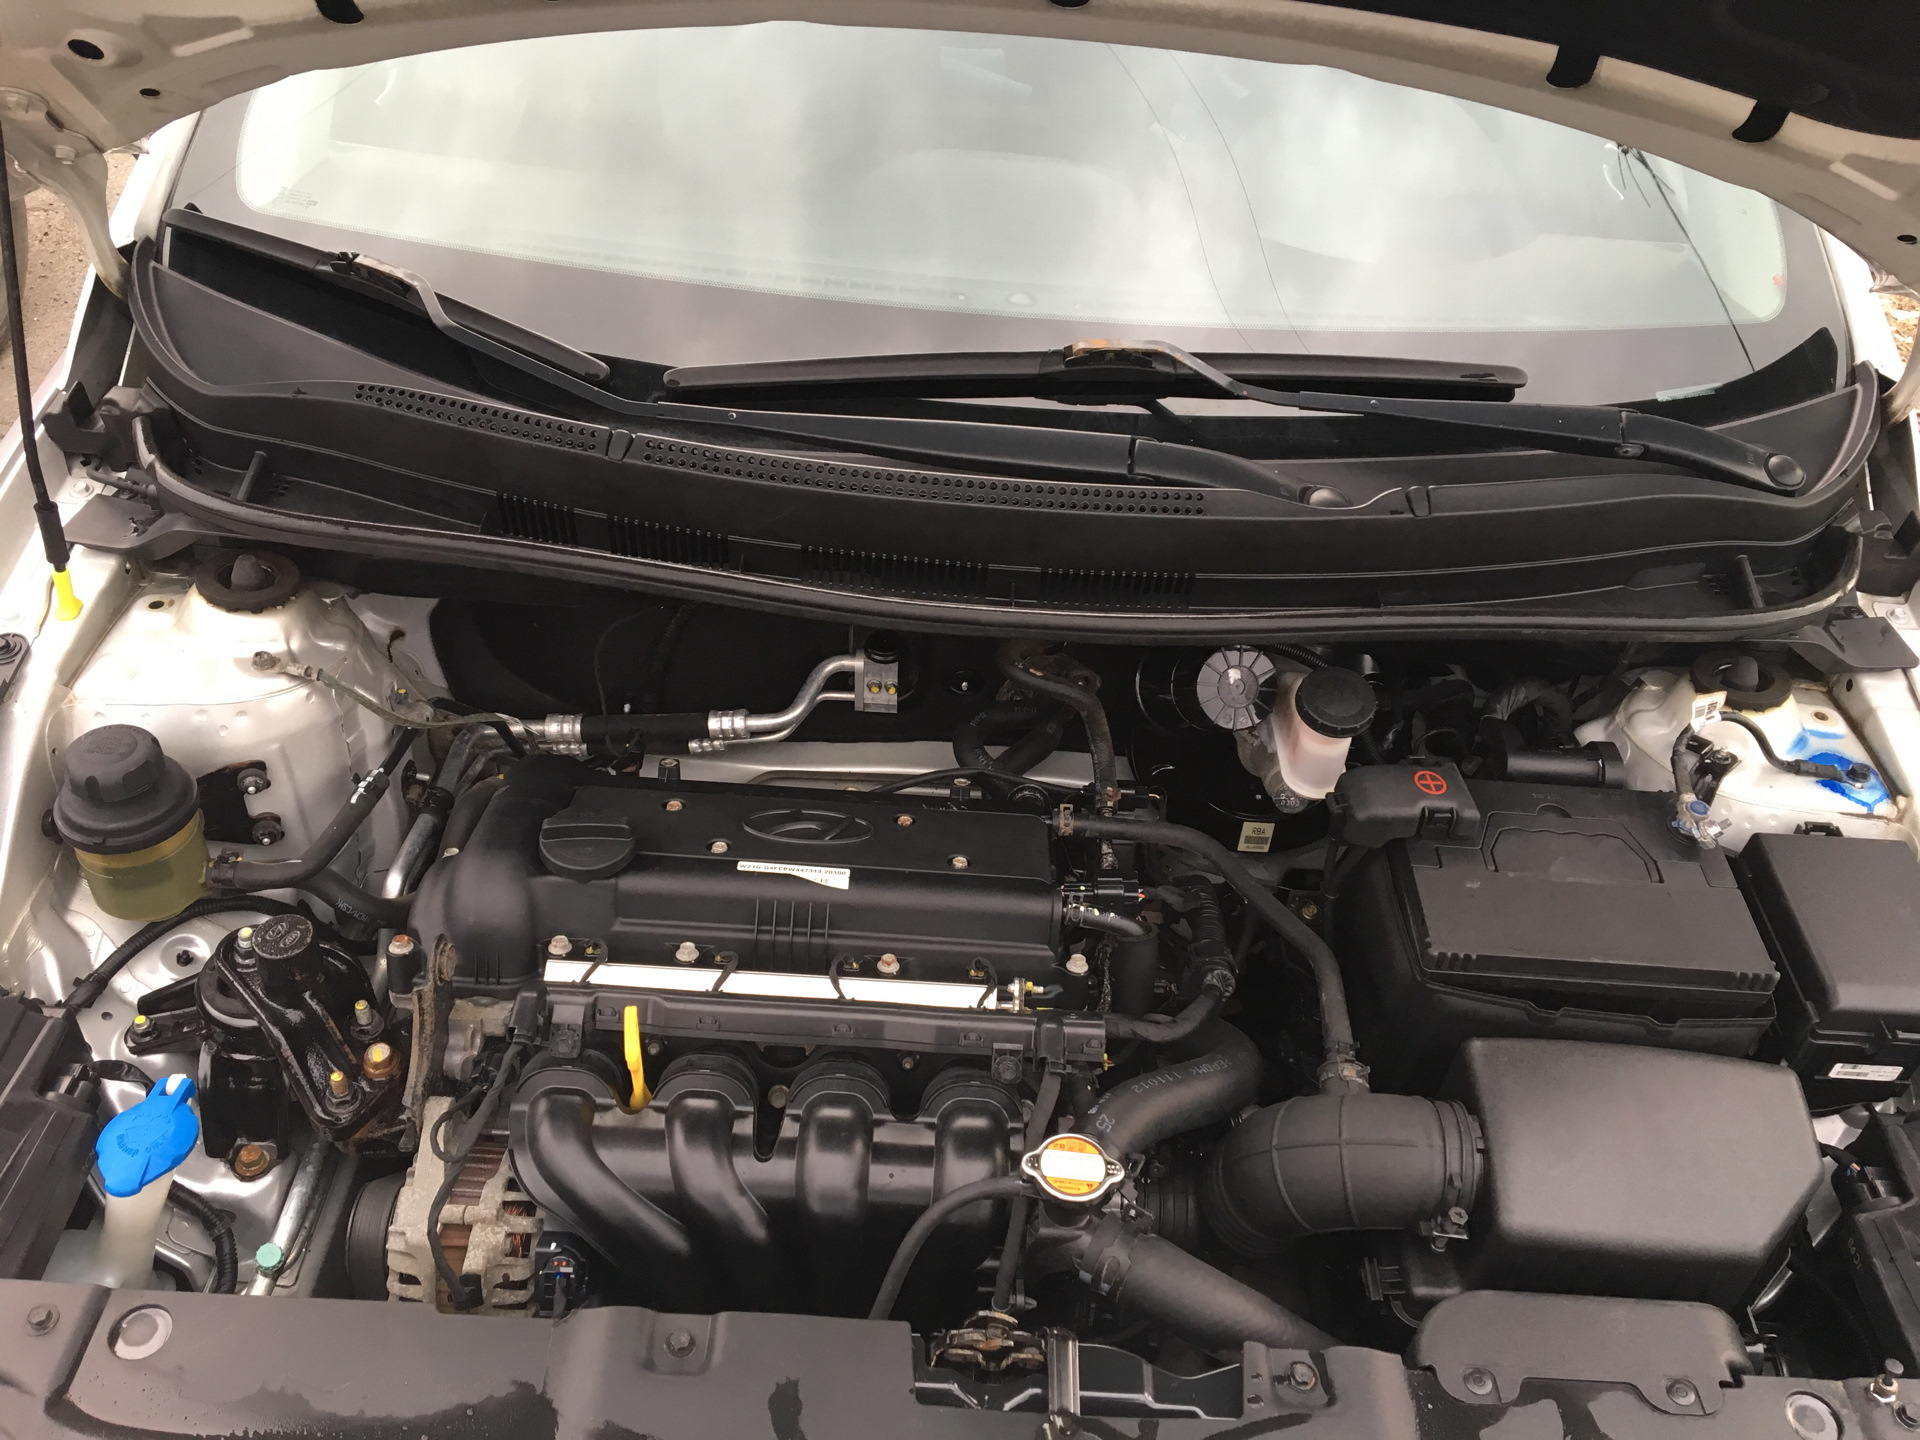 Какой двигатель на солярисе 1.6. Двигатель Хендай Солярис 2012. Мотор Хендай Солярис 1.6. Мотор Hyundai Solaris 1.4. Хендай Солярис 2016 двигатель 1.6.